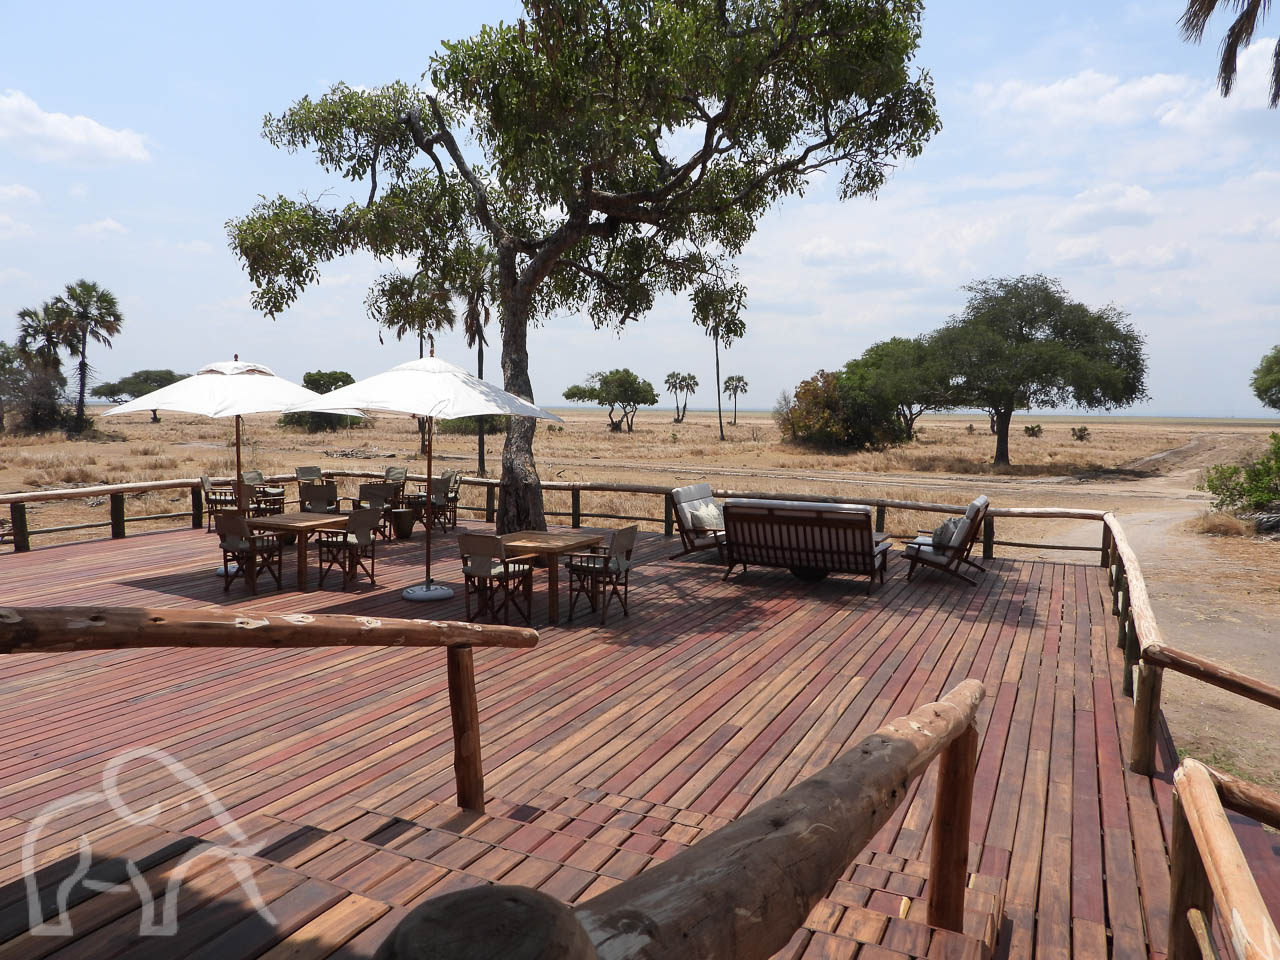 van het terras met tafels en parasollen een uitzicht over de goud gele vlaktes van Katavi